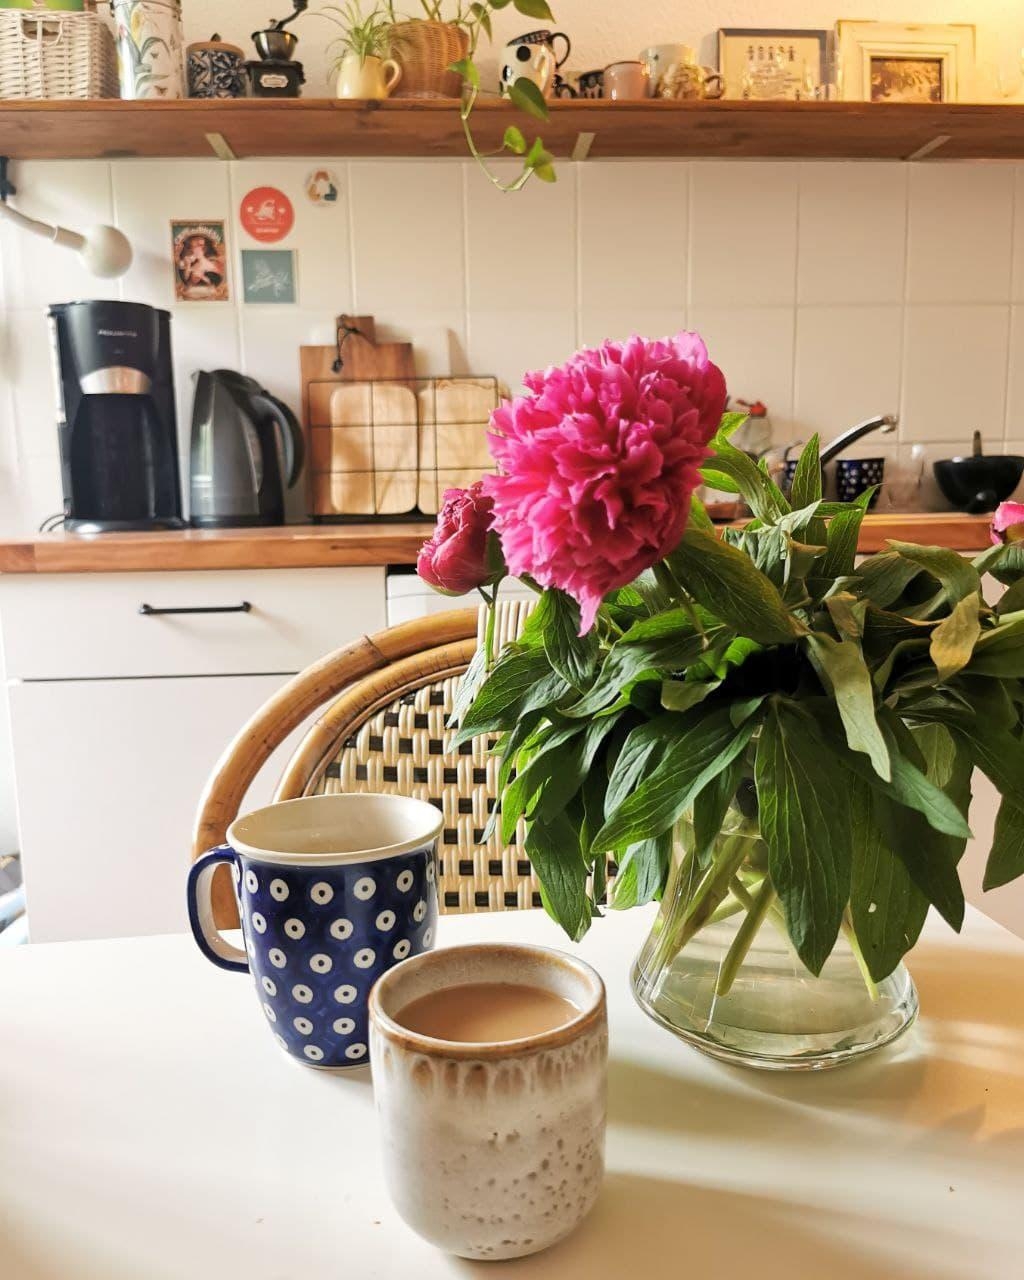 Wünsche euch einen guten ersten Arbeitstag nach dem langen Wochenende 🤍 #küche #kaffee #pfingstrosen #blumen